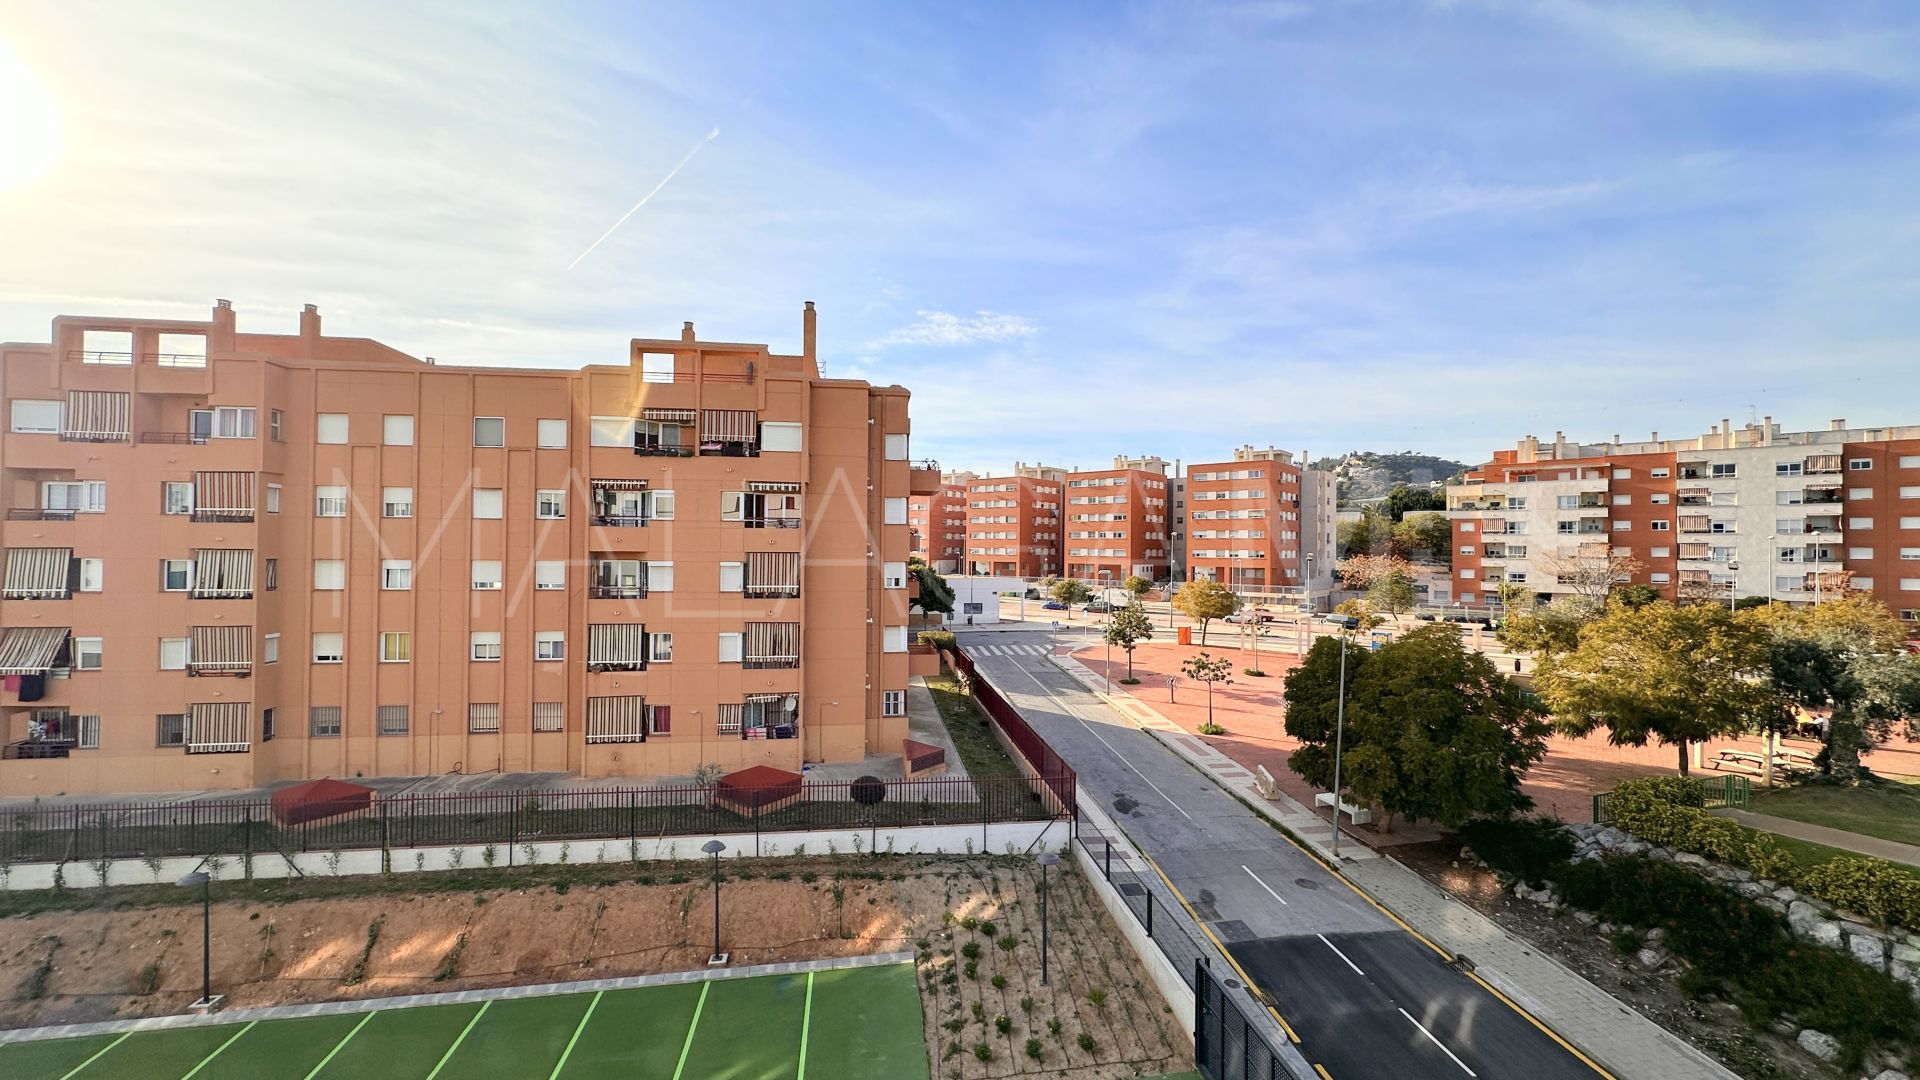 Apartamento de 2 bedrooms for sale in El Atabal